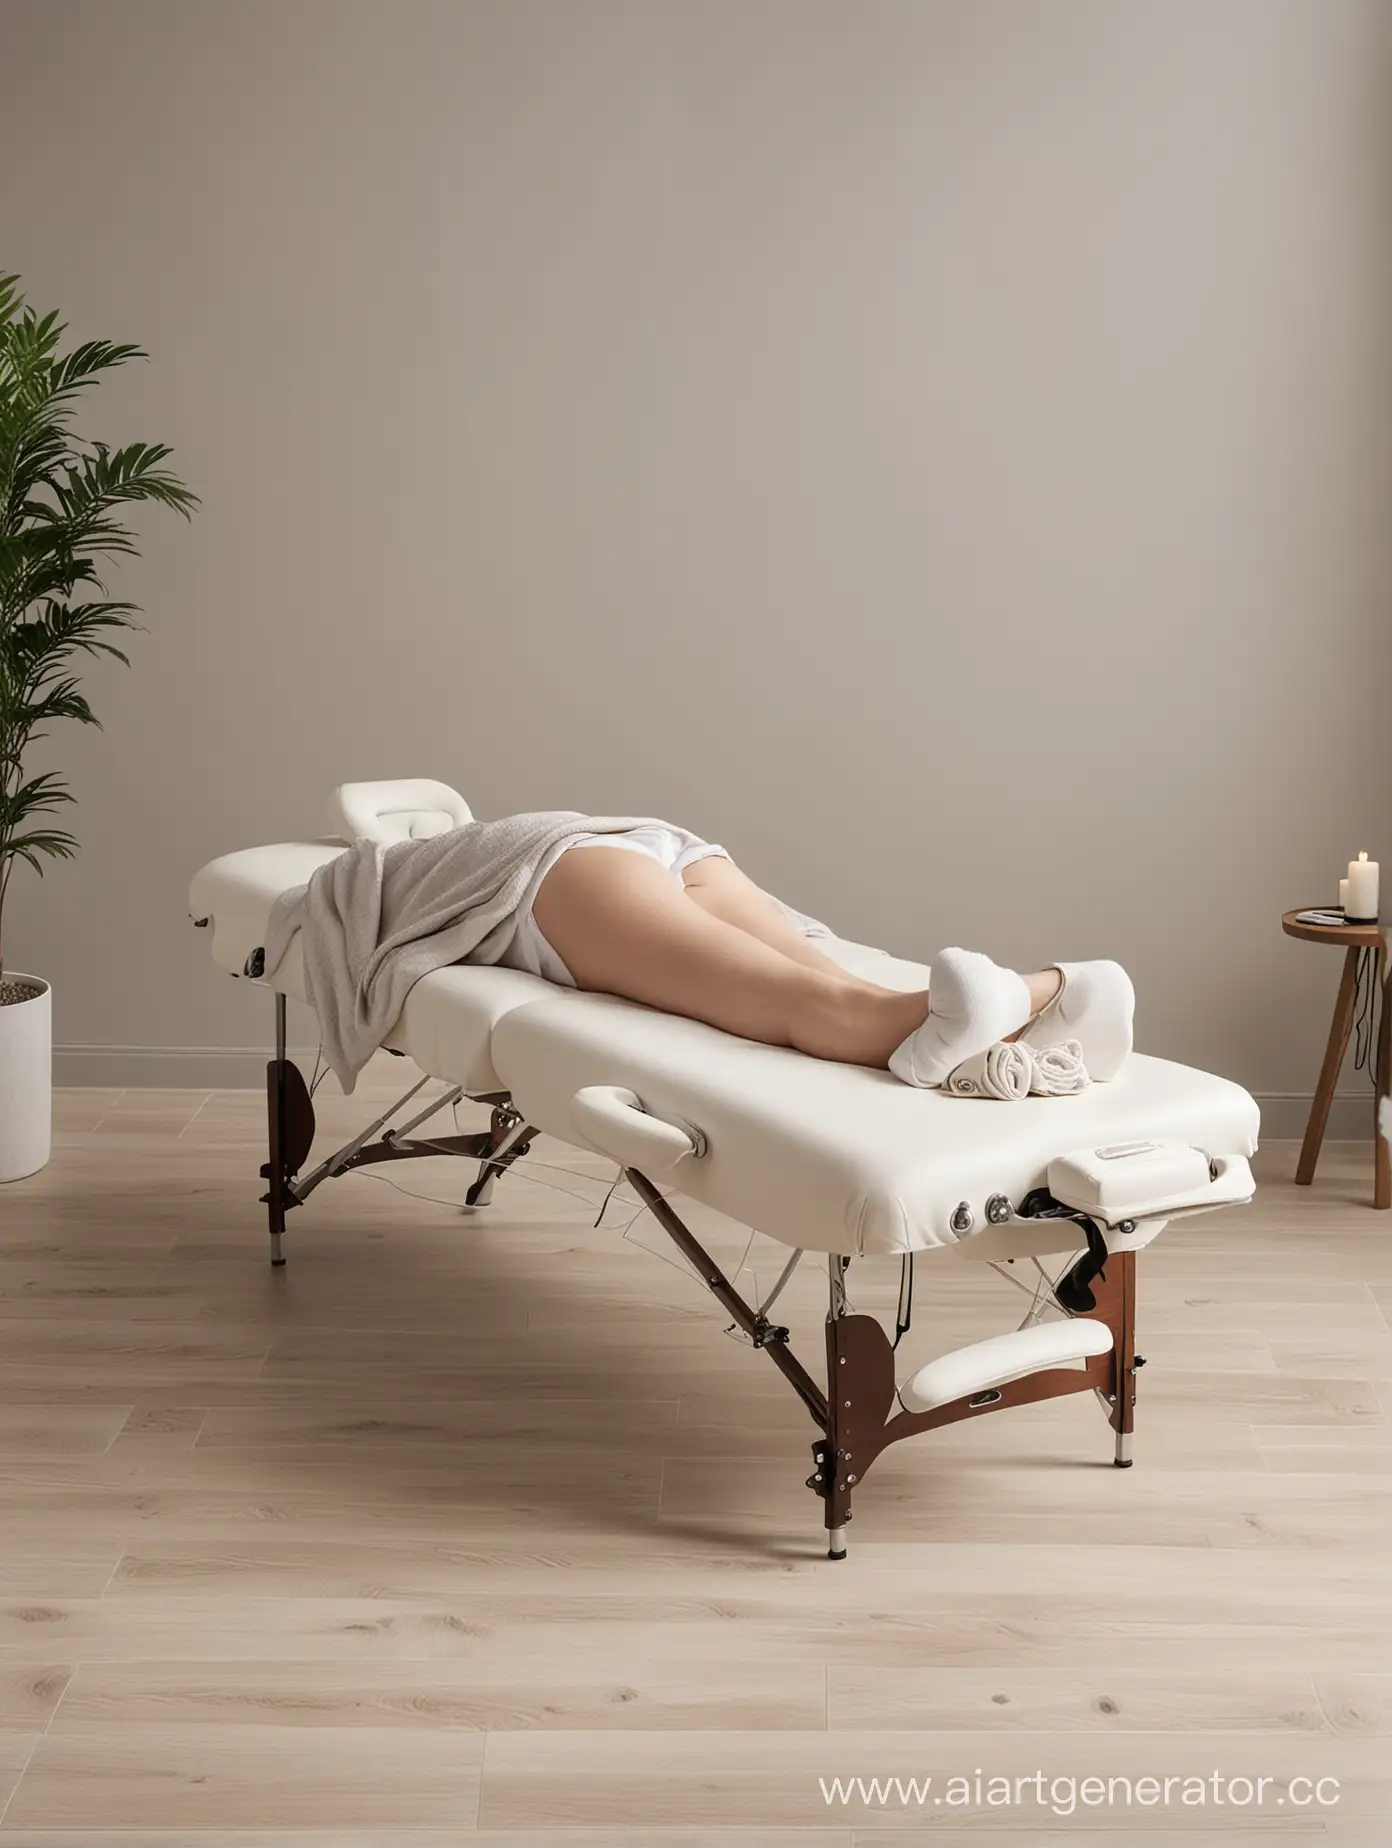 Довольный человек лежит на переносном массажном столе после сеанса массажа в современном дизайне